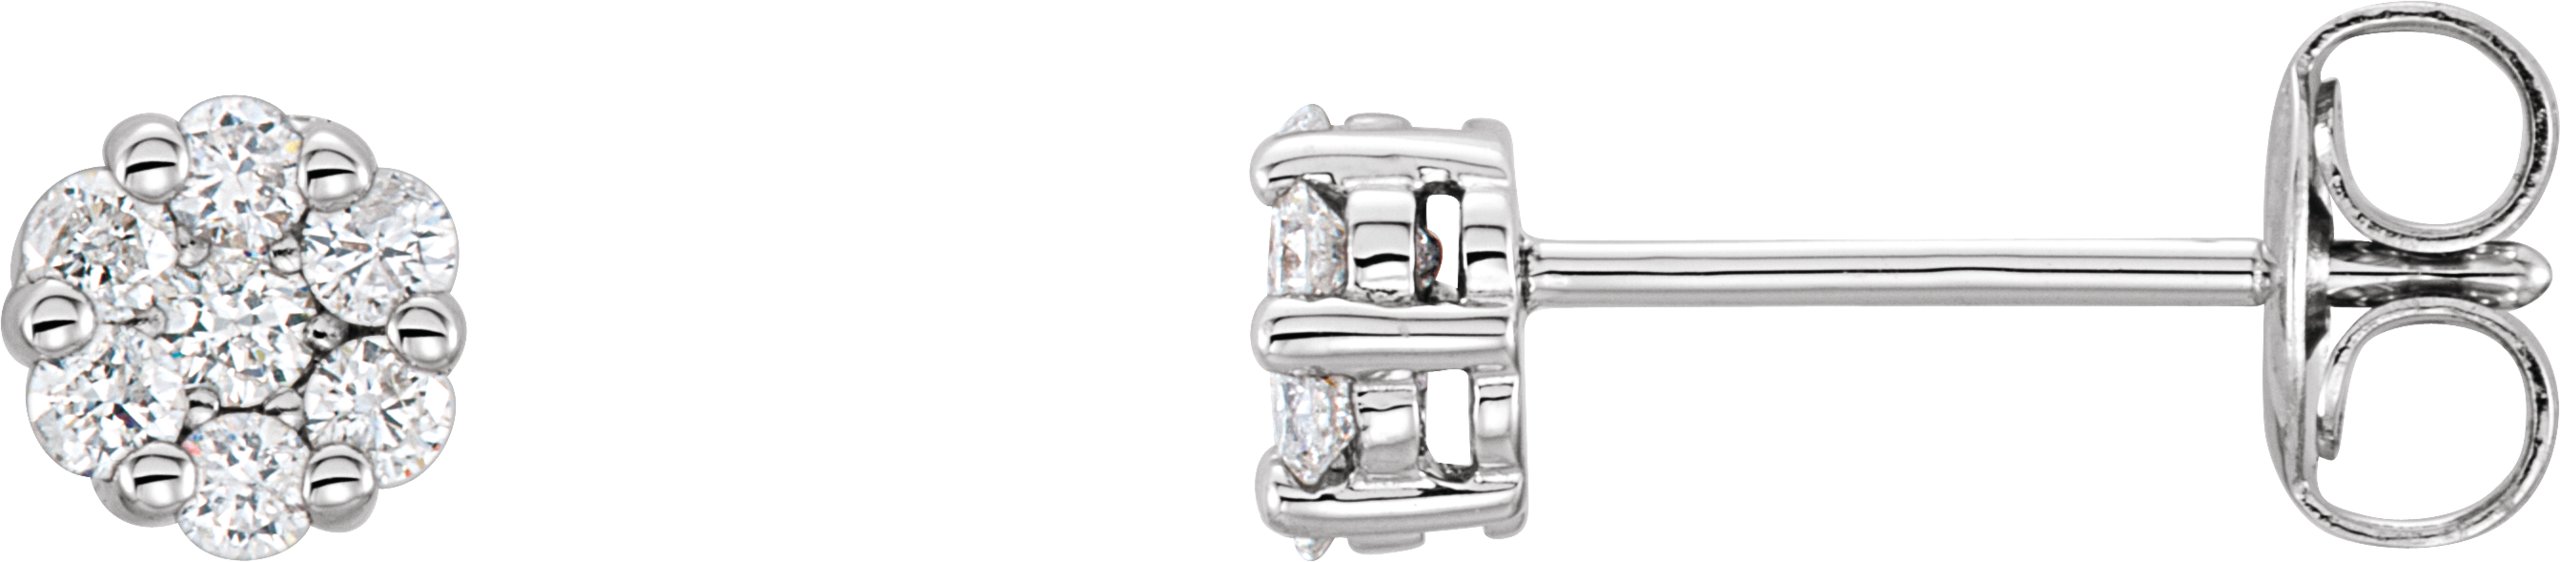 14K White 1/4 CTW Natural Diamond Cluster Earrings